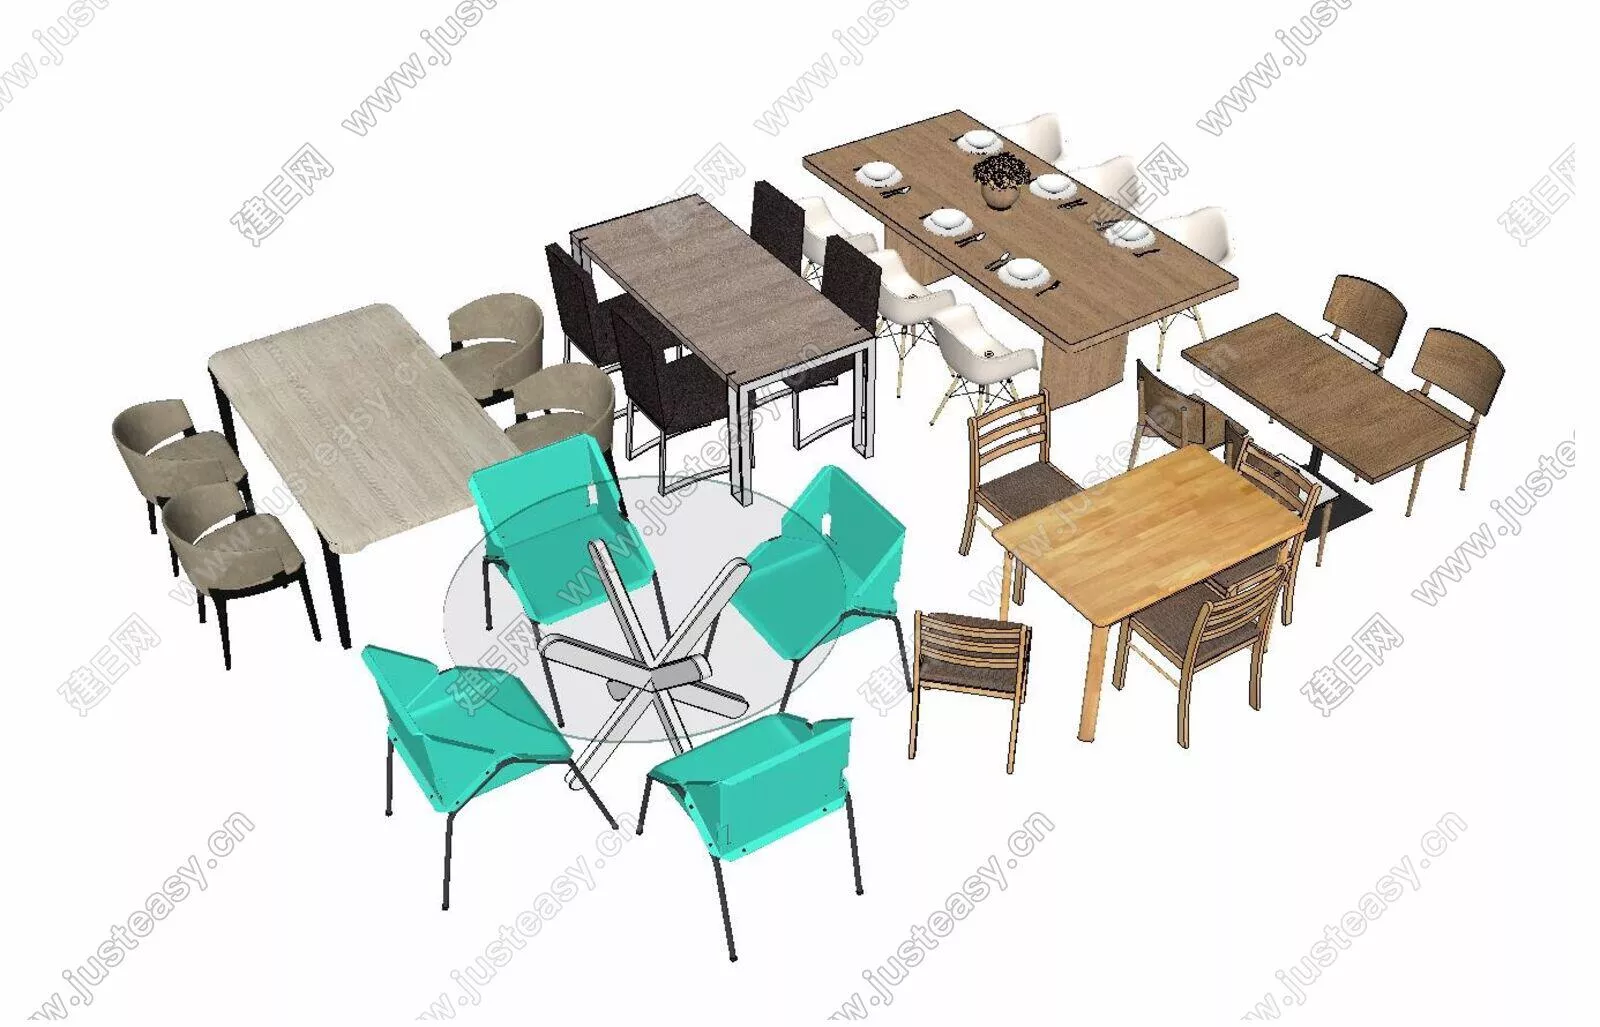 MODERN DINING TABLE SET - SKETCHUP 3D MODEL - ENSCAPE - 112476580